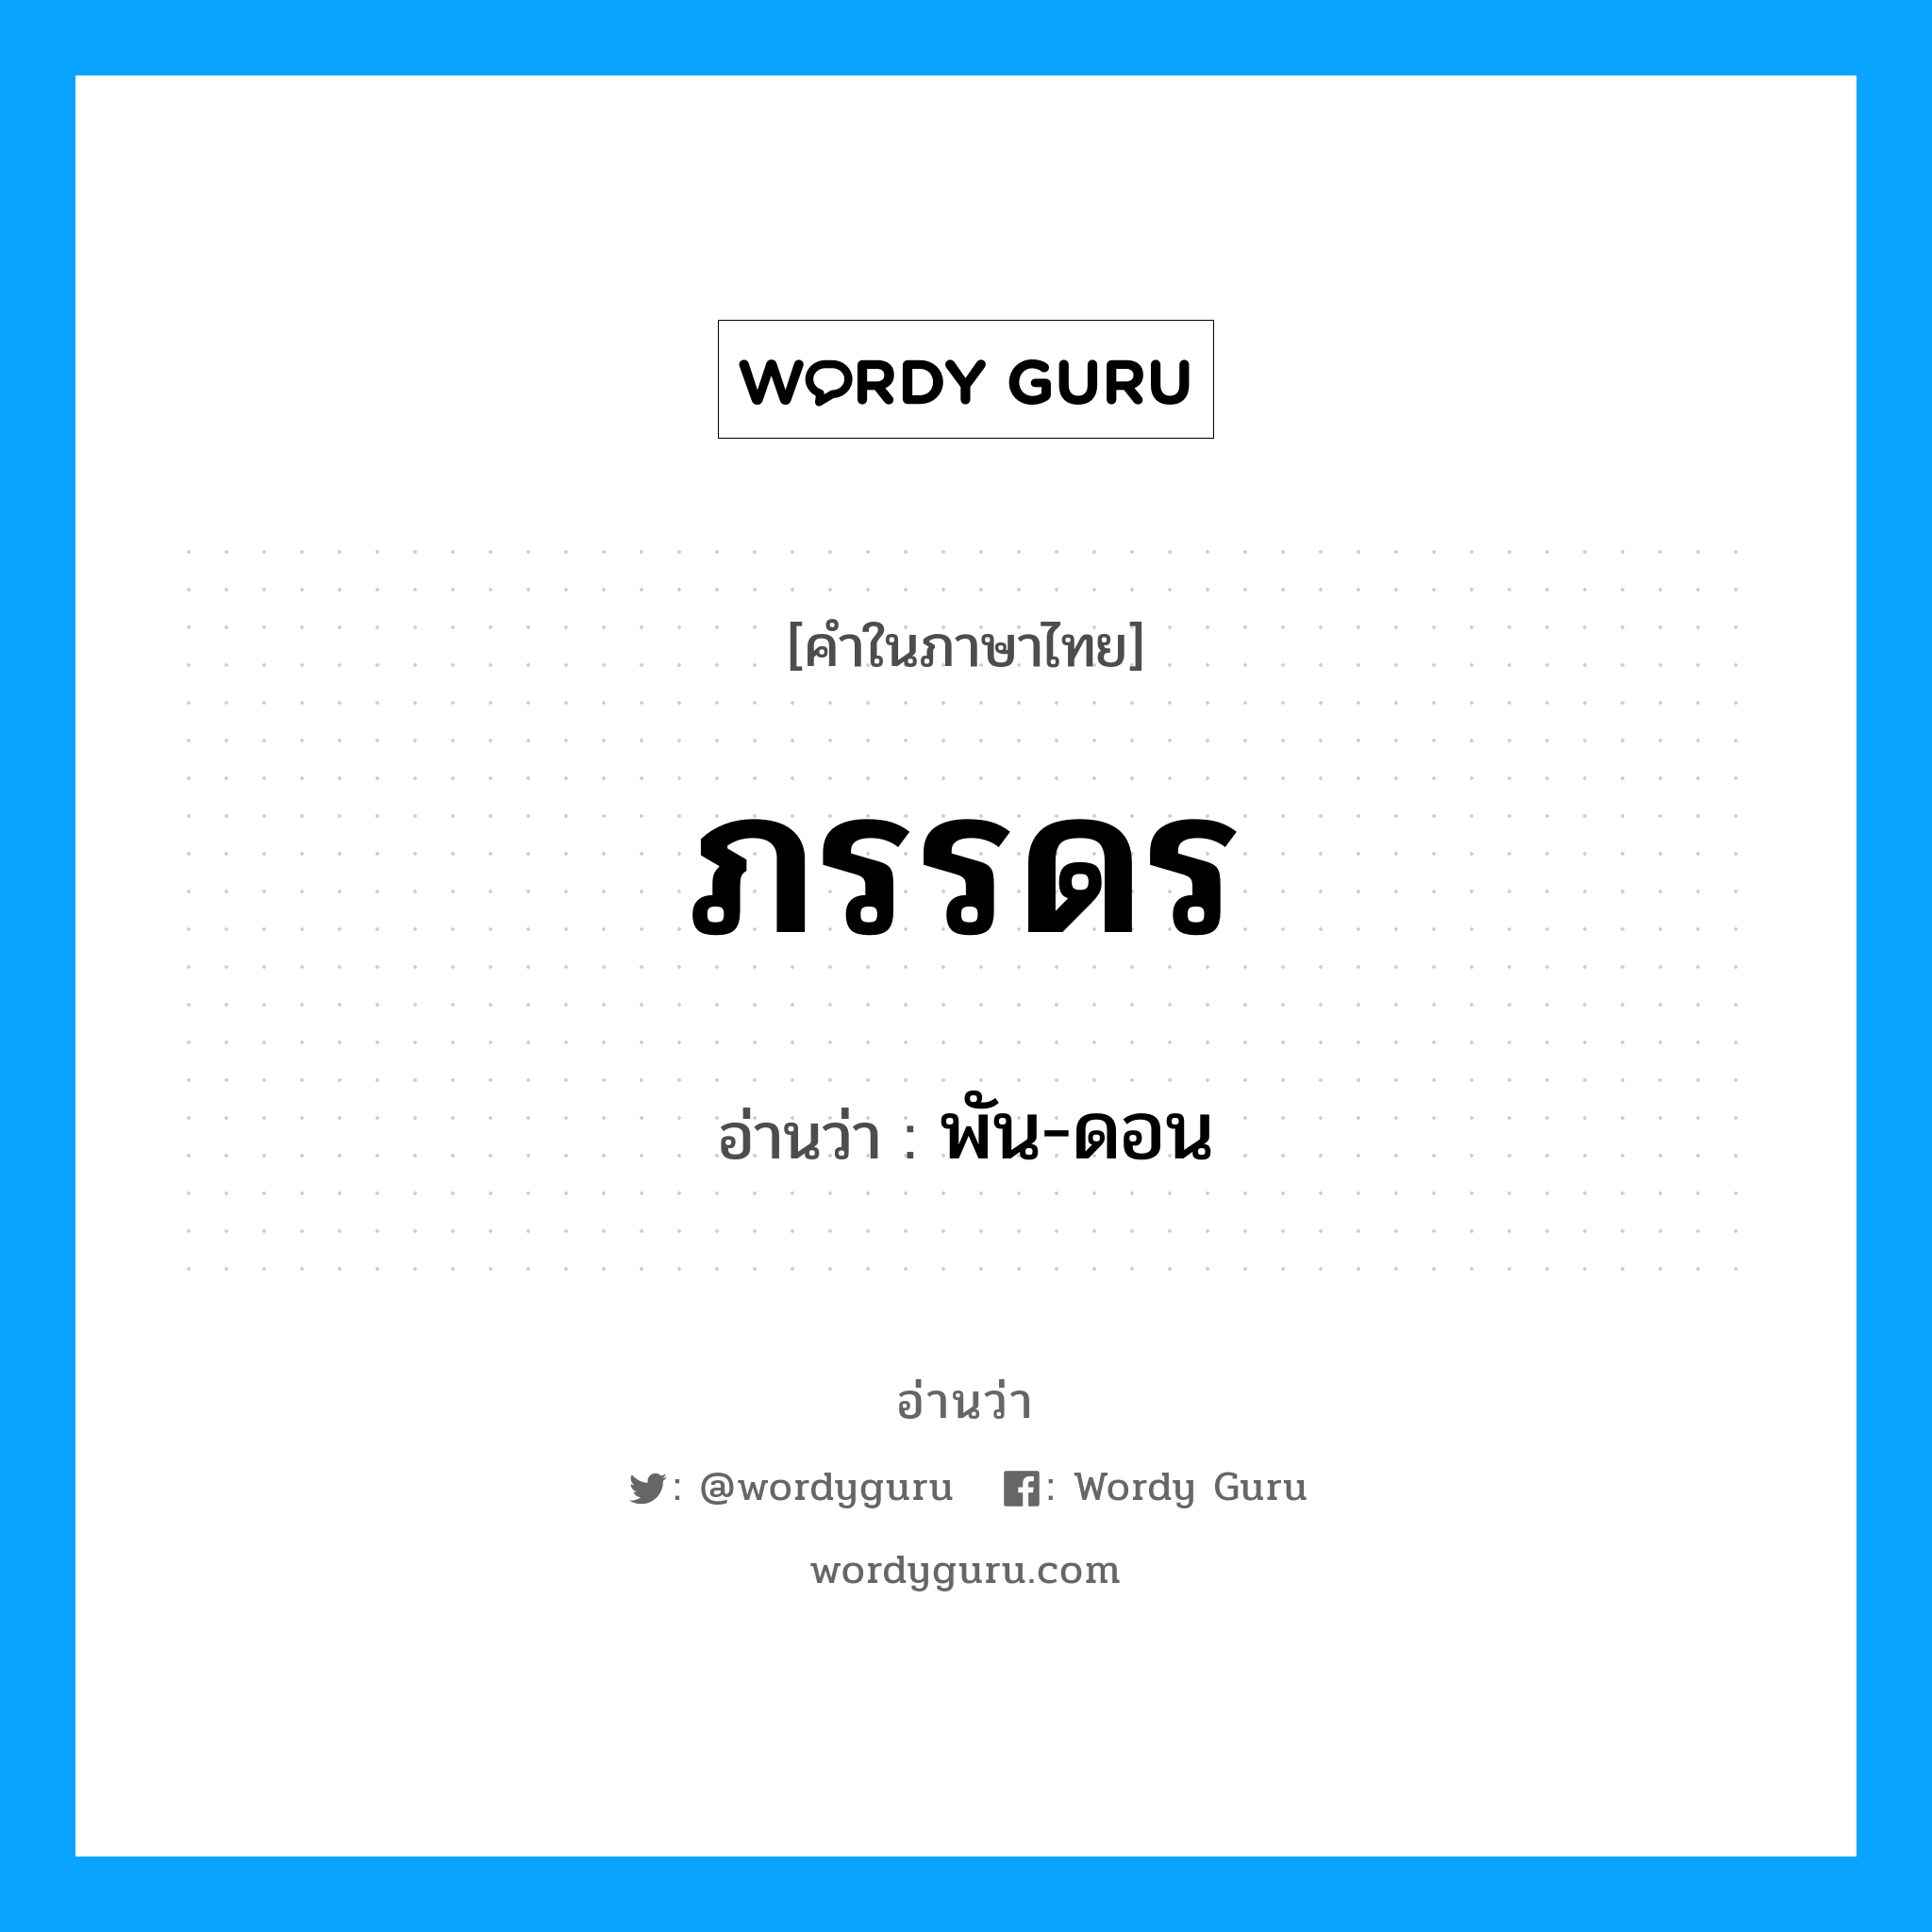 พัน-ดอน เป็นคำอ่านของคำไหน?, คำในภาษาไทย พัน-ดอน อ่านว่า ภรรดร